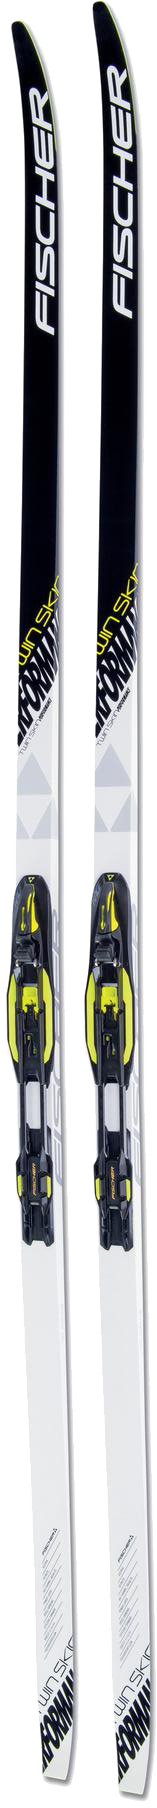 Беговые лыжи Fischer Twin Skin Perfomance IFP 197 см